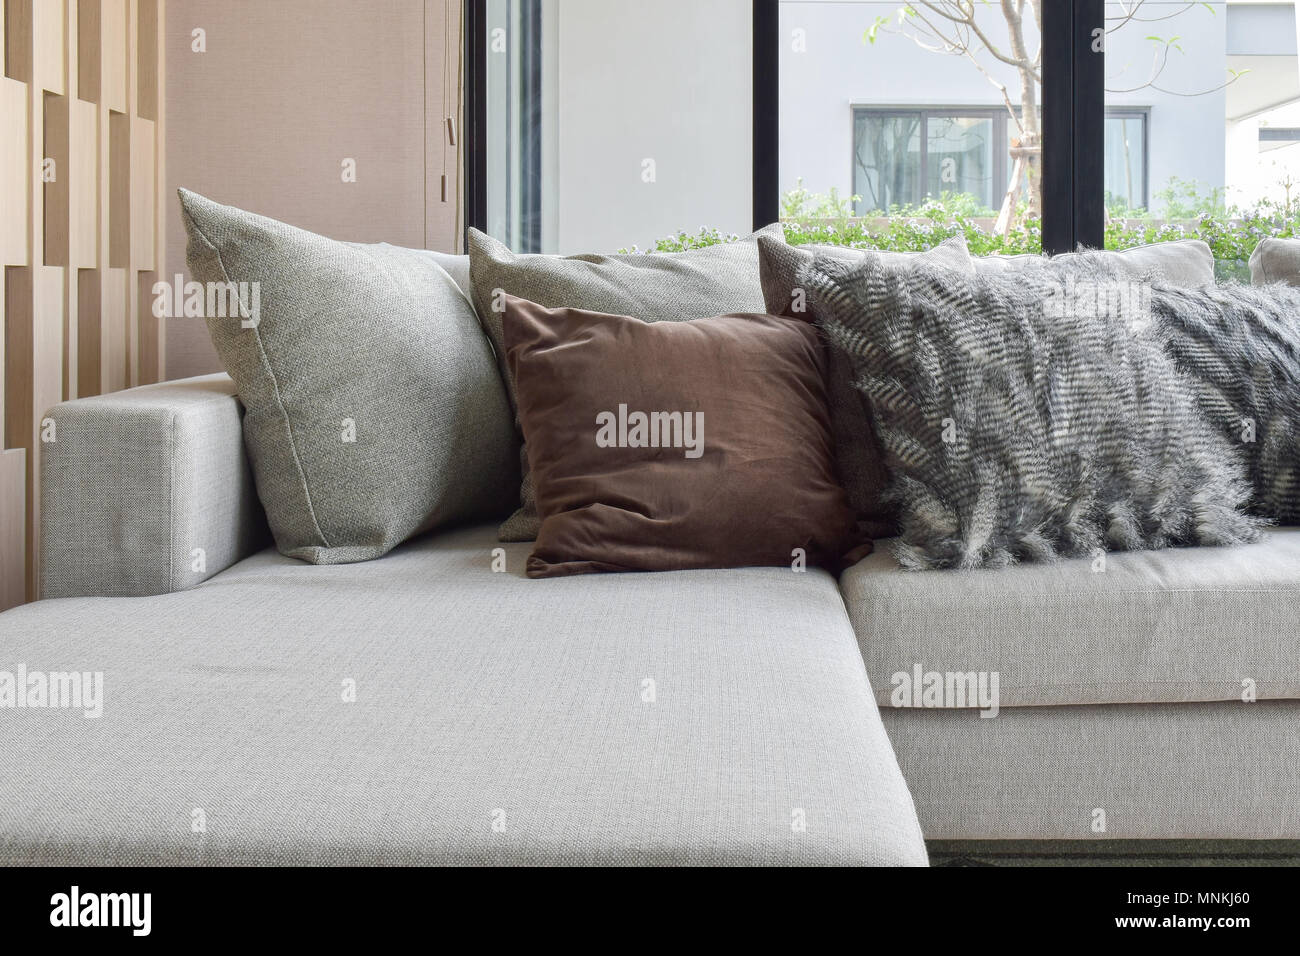 Braun und Grau Kissen Einstellung auf beige Couch in der Ecke der  Wohnzimmer Stockfotografie - Alamy